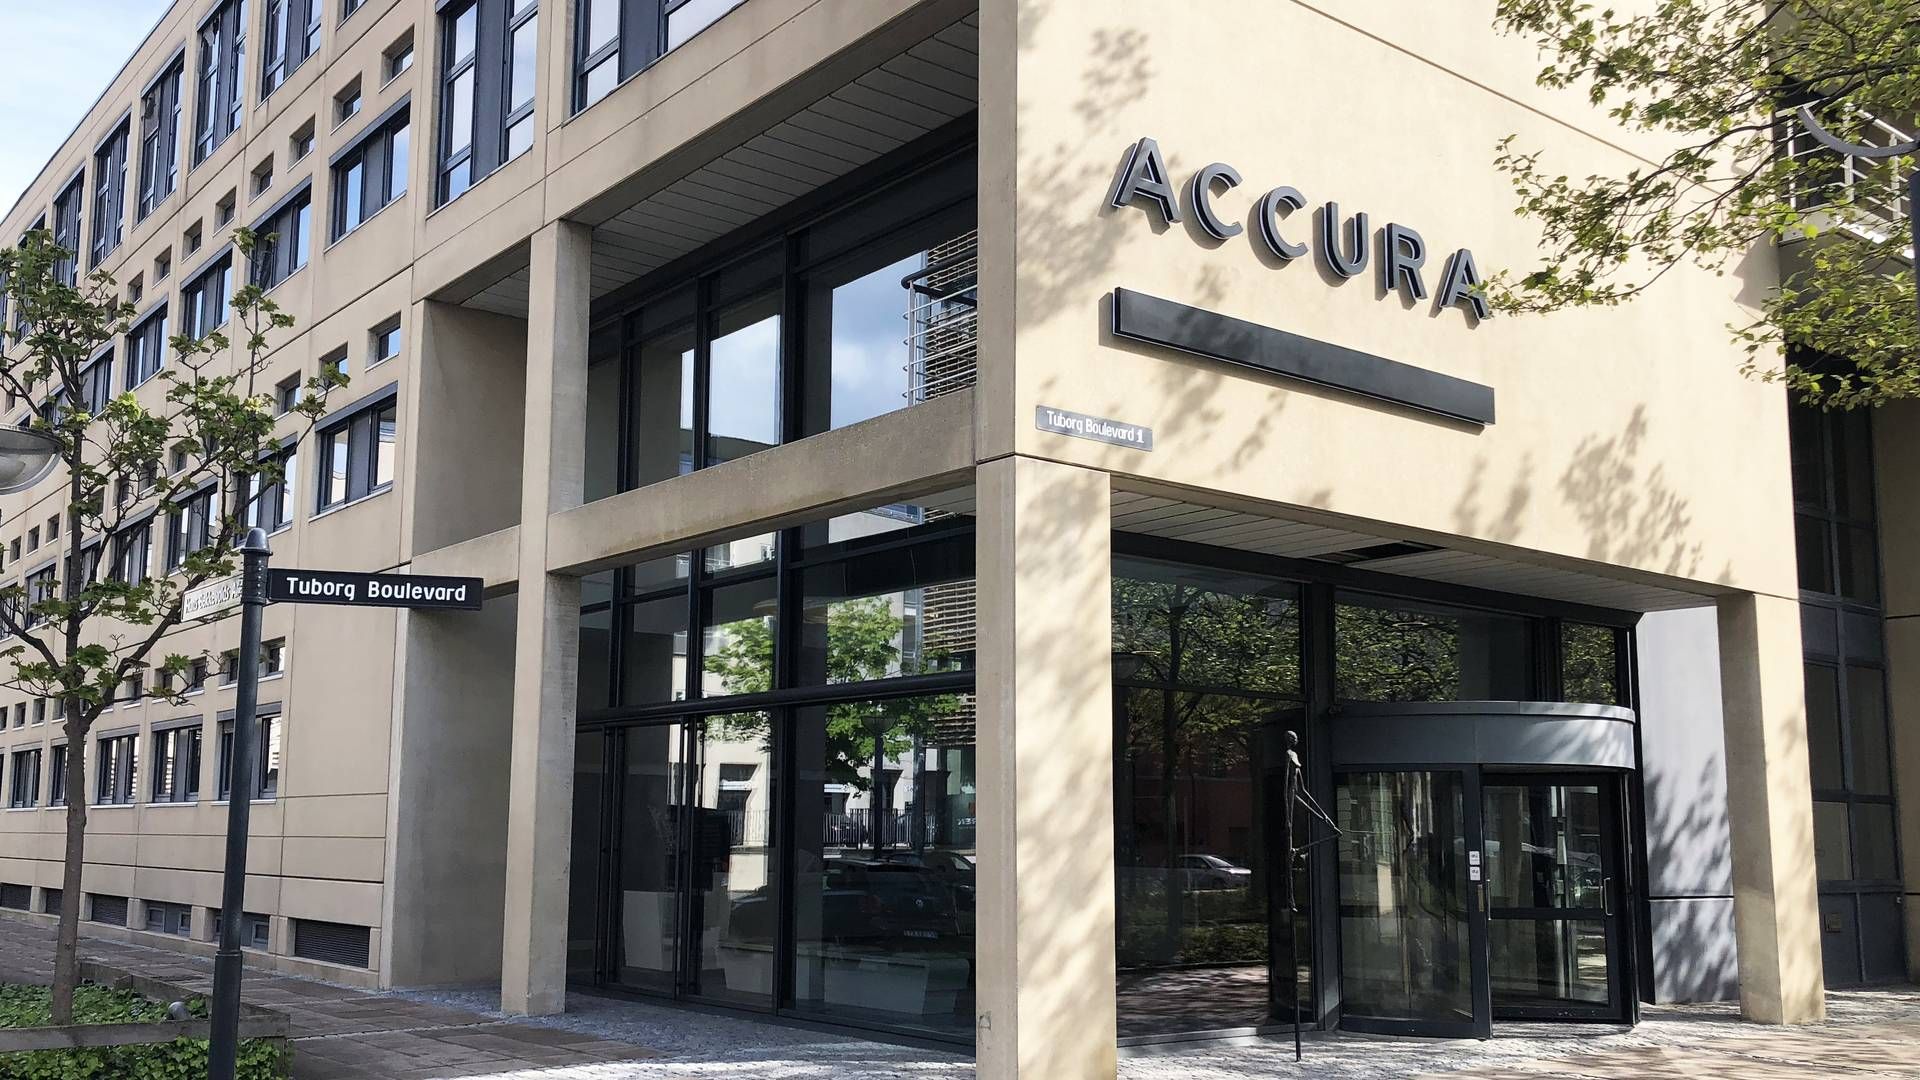 Accura får ny partner, der kommer fra en stilling som senioradvokat hos Bech-Bruun. | Foto: Accura / PR